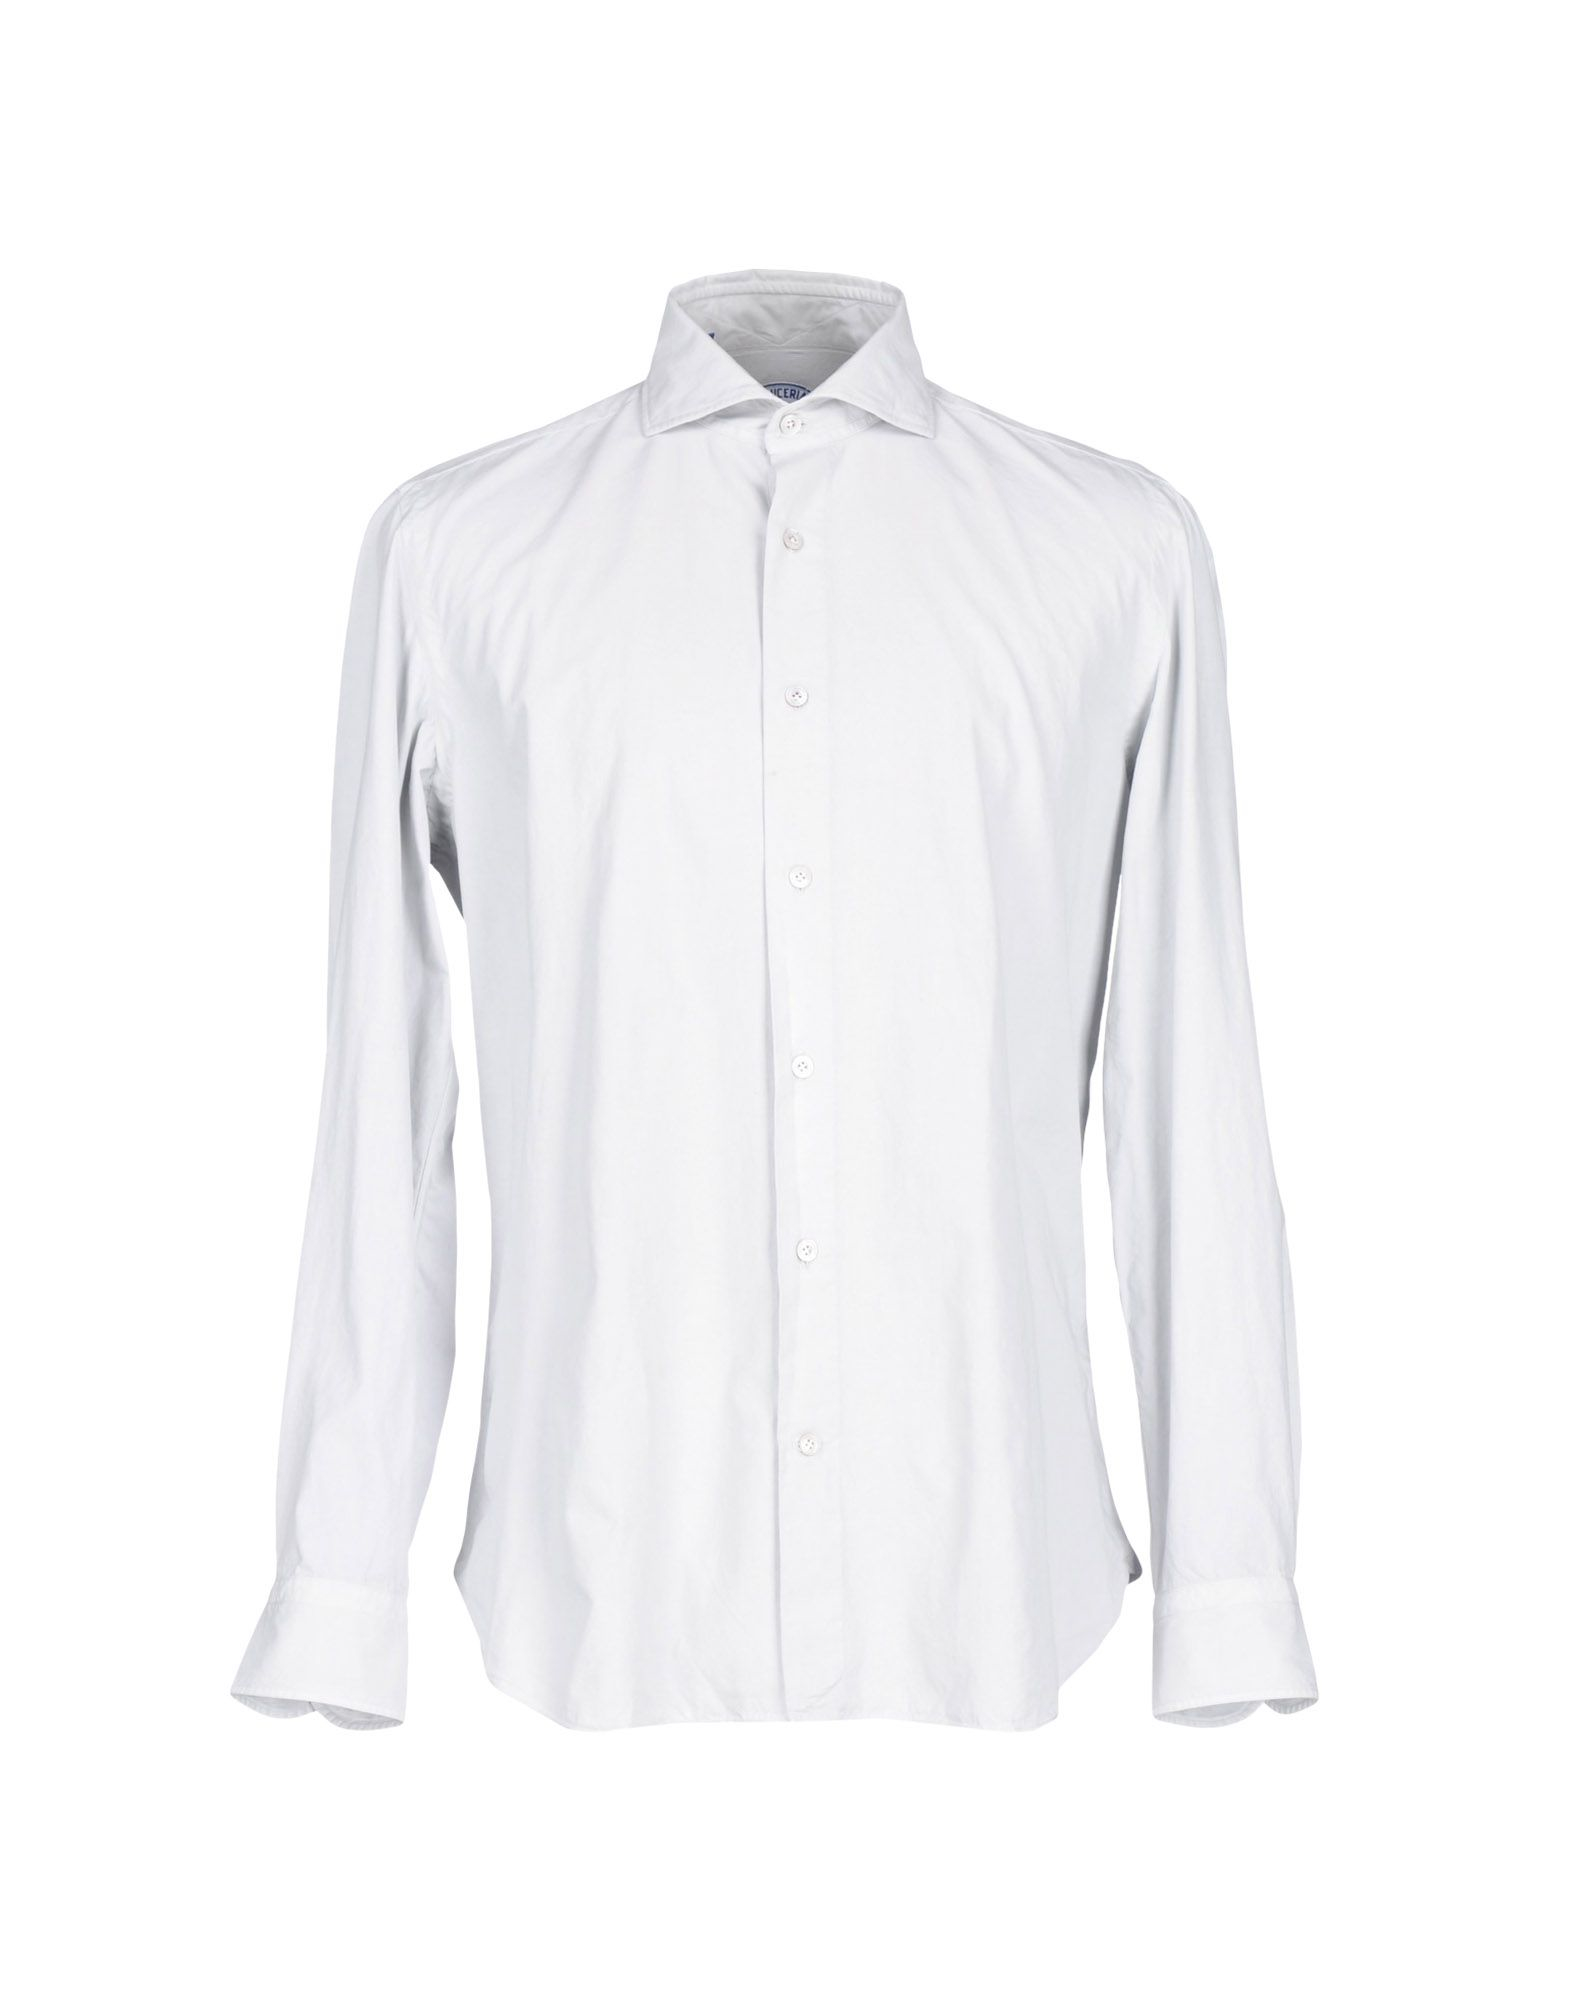 Vincenzo Di Ruggiero Cotton Shirt in Gray for Men - Lyst